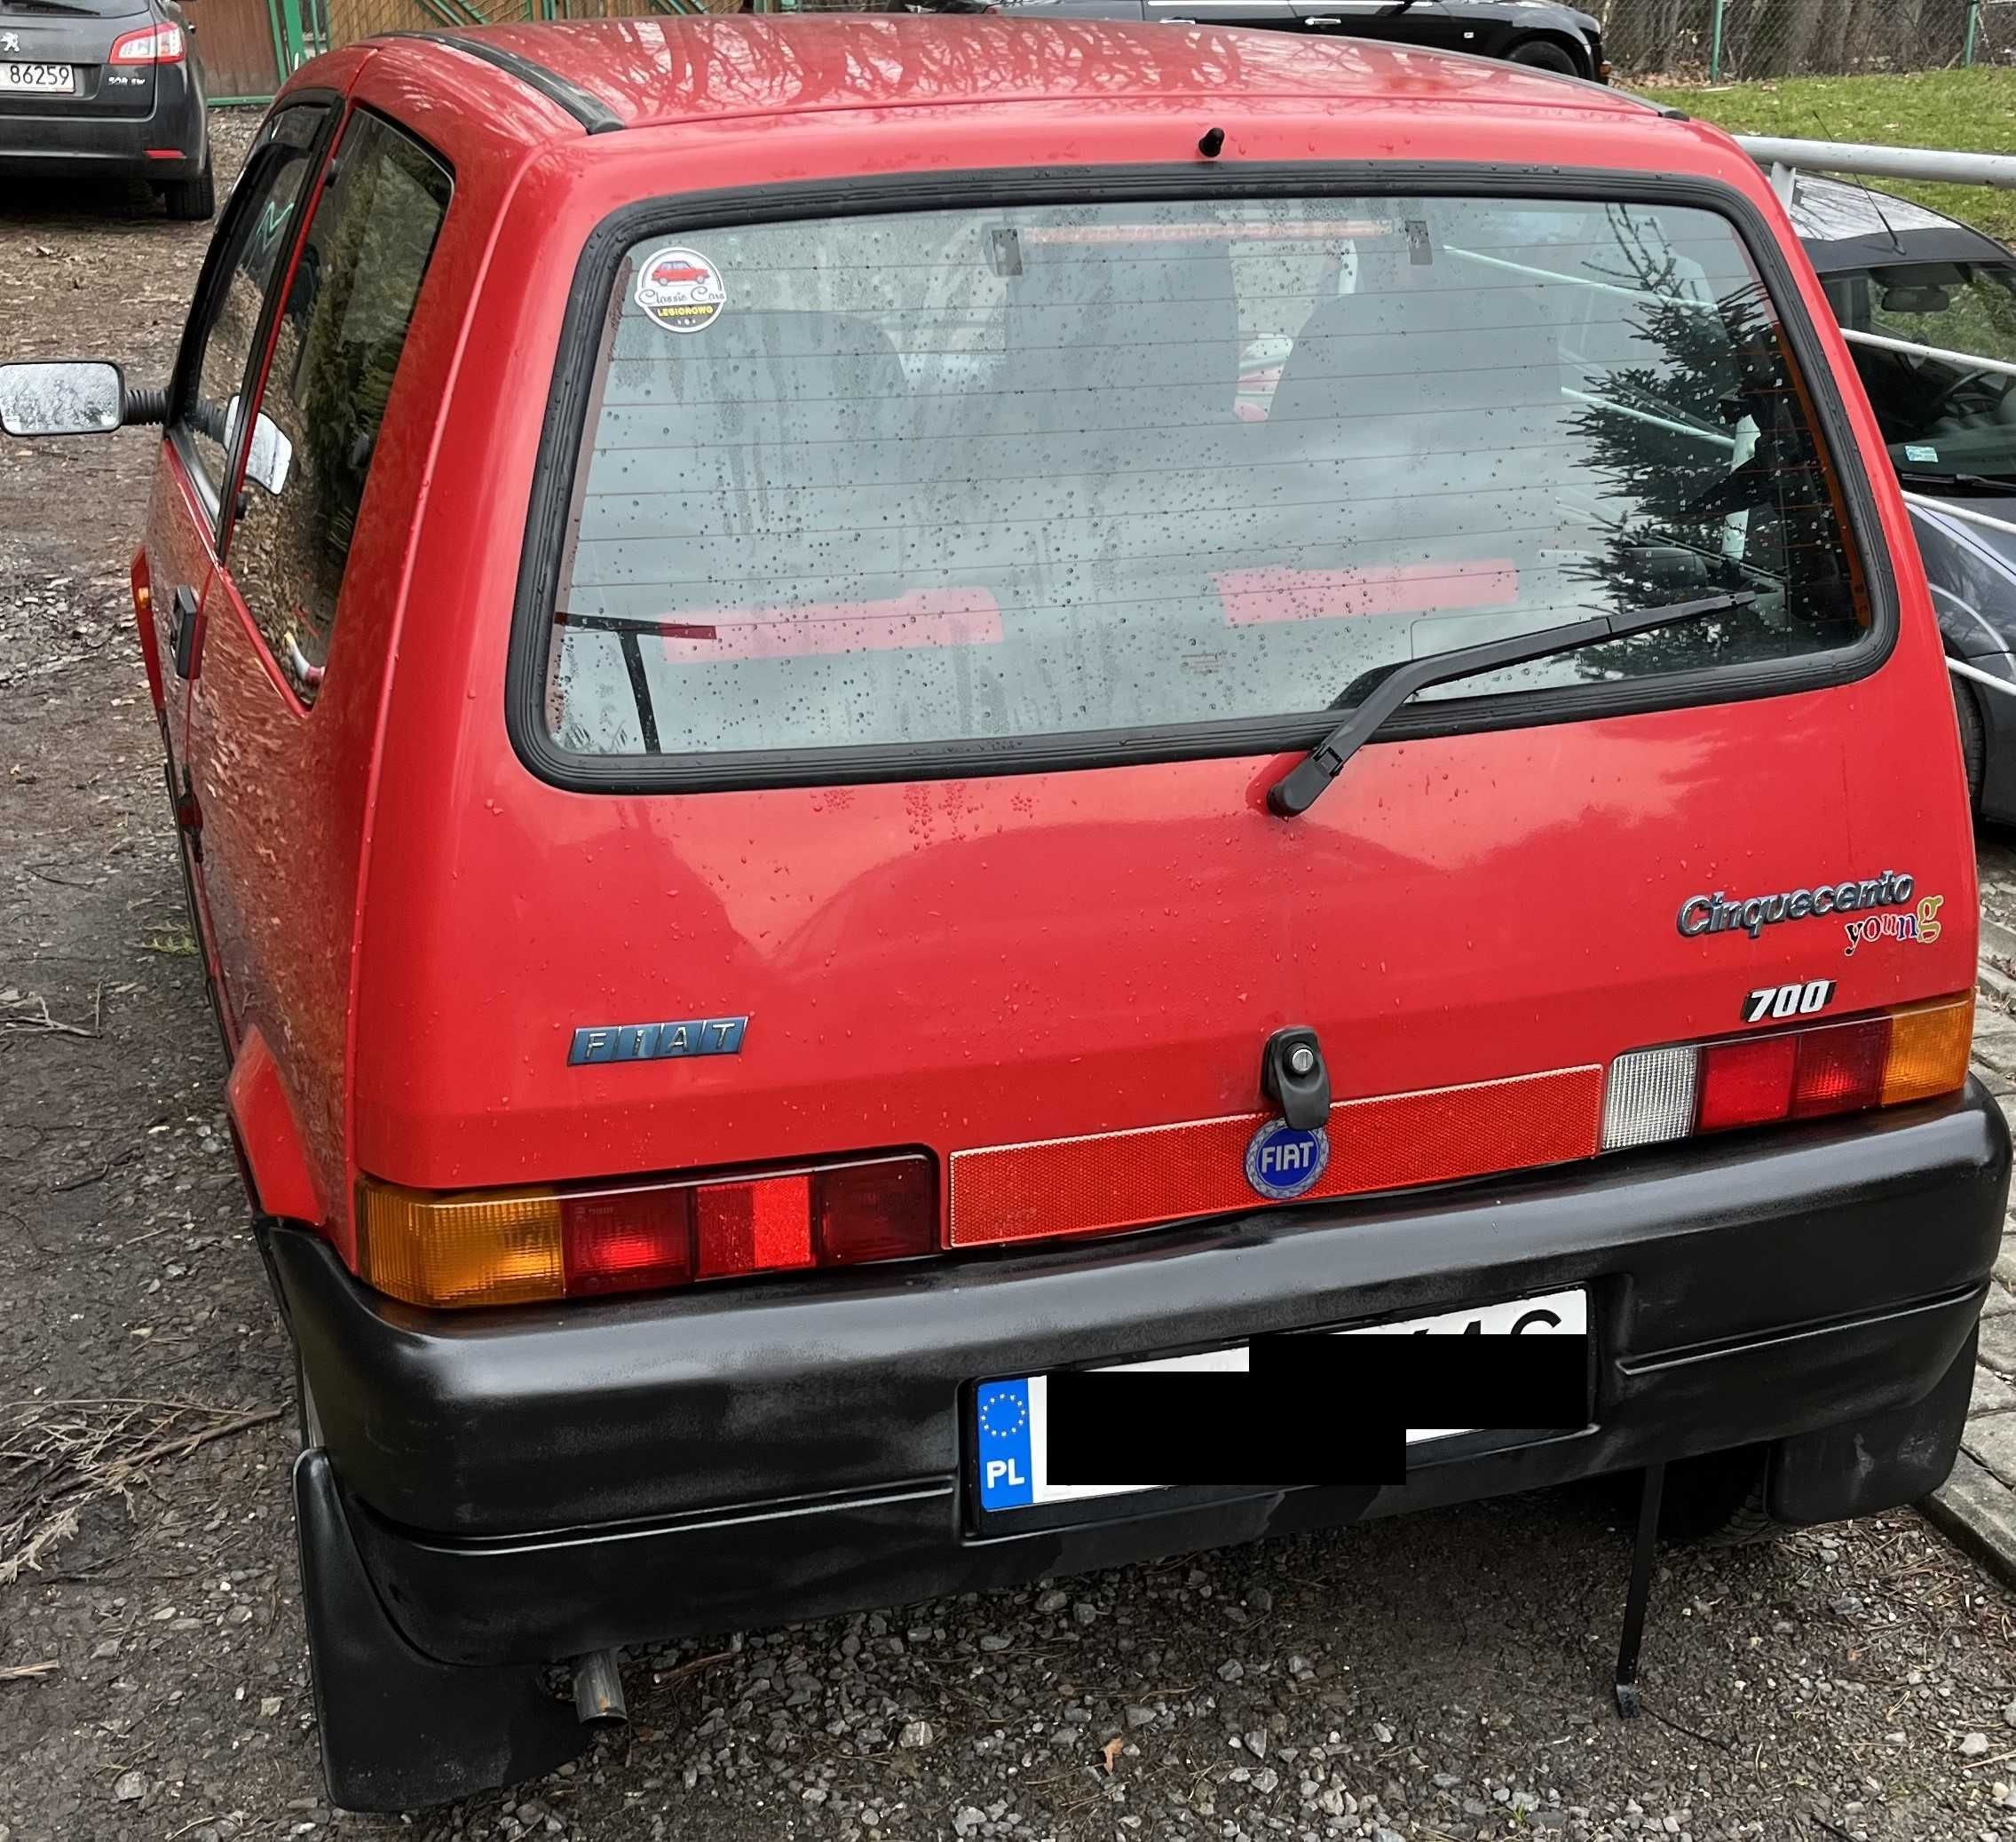 Fiat Cinquecento 1997r. do jazdy lub do kolekcji. stan techniczny bdb